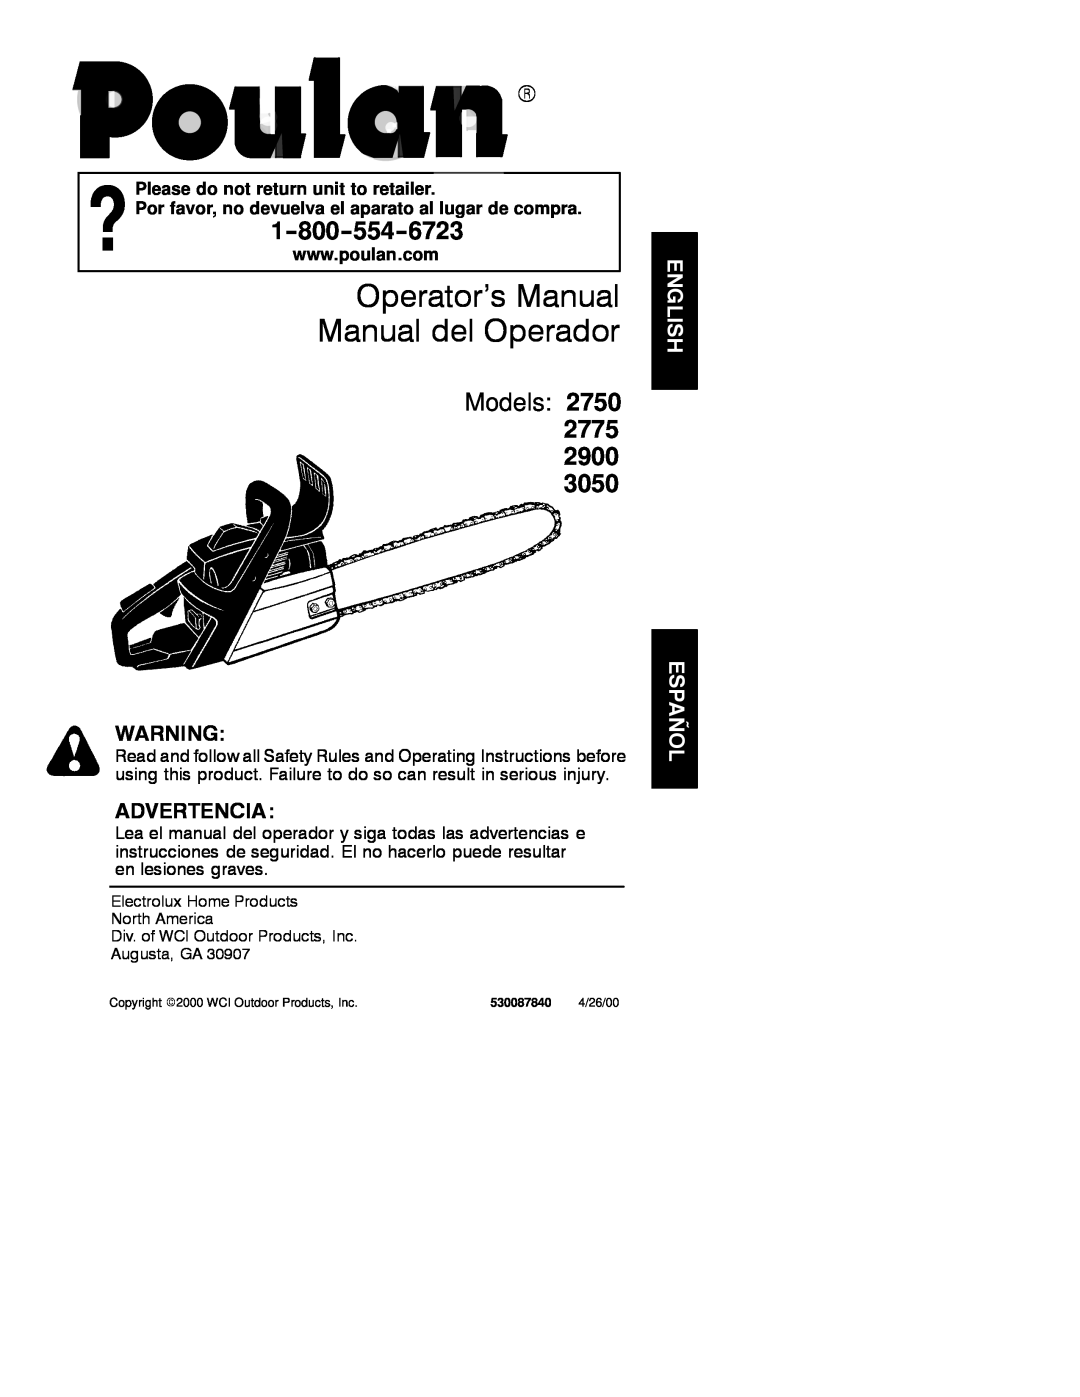 Poulan operating instructions Operator’s Manual Manual del Operador, Models 2750 2775 2900, Advertencia 